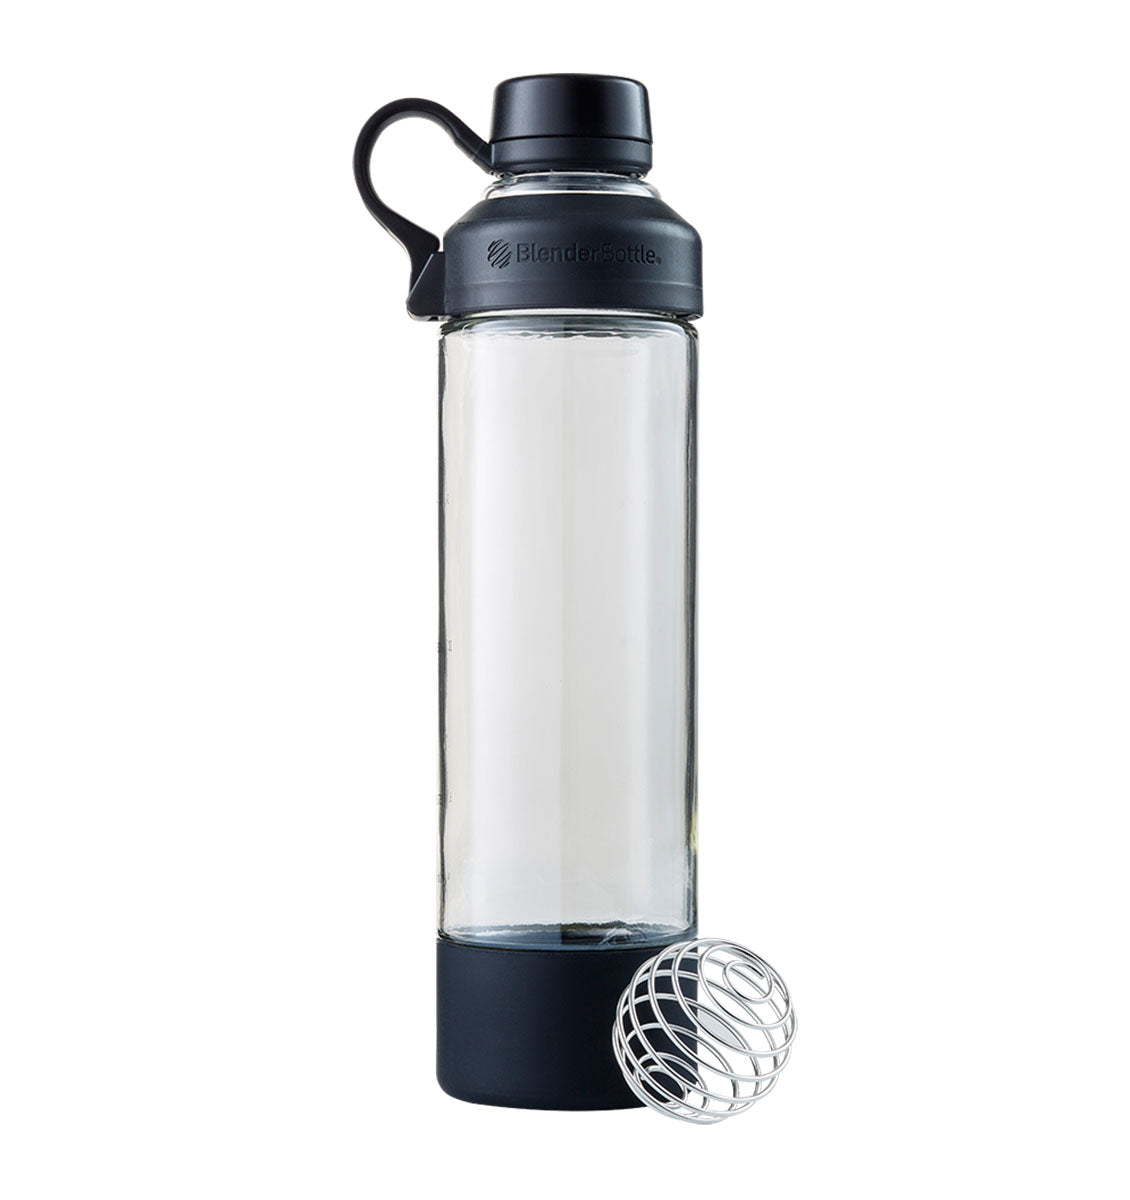 BlenderBottle Mantra Glass Shaker Bottle 20oz/600mL - Clear/Black